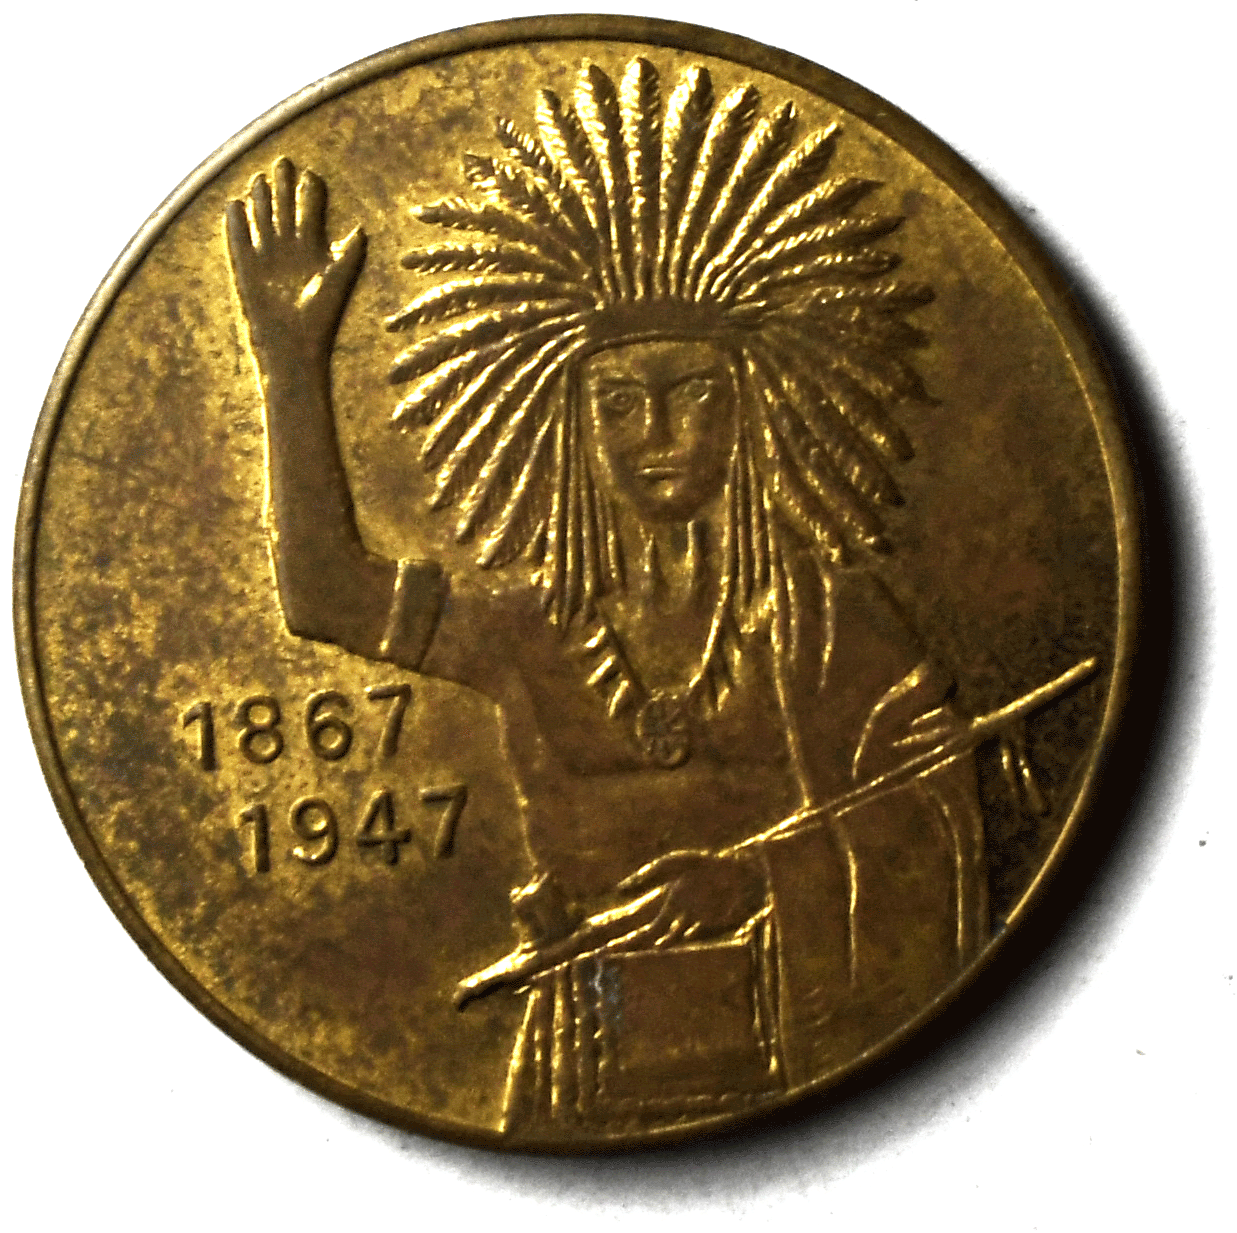 1947 Ellsworth Kansas 80th Anniversary Medal 28mm